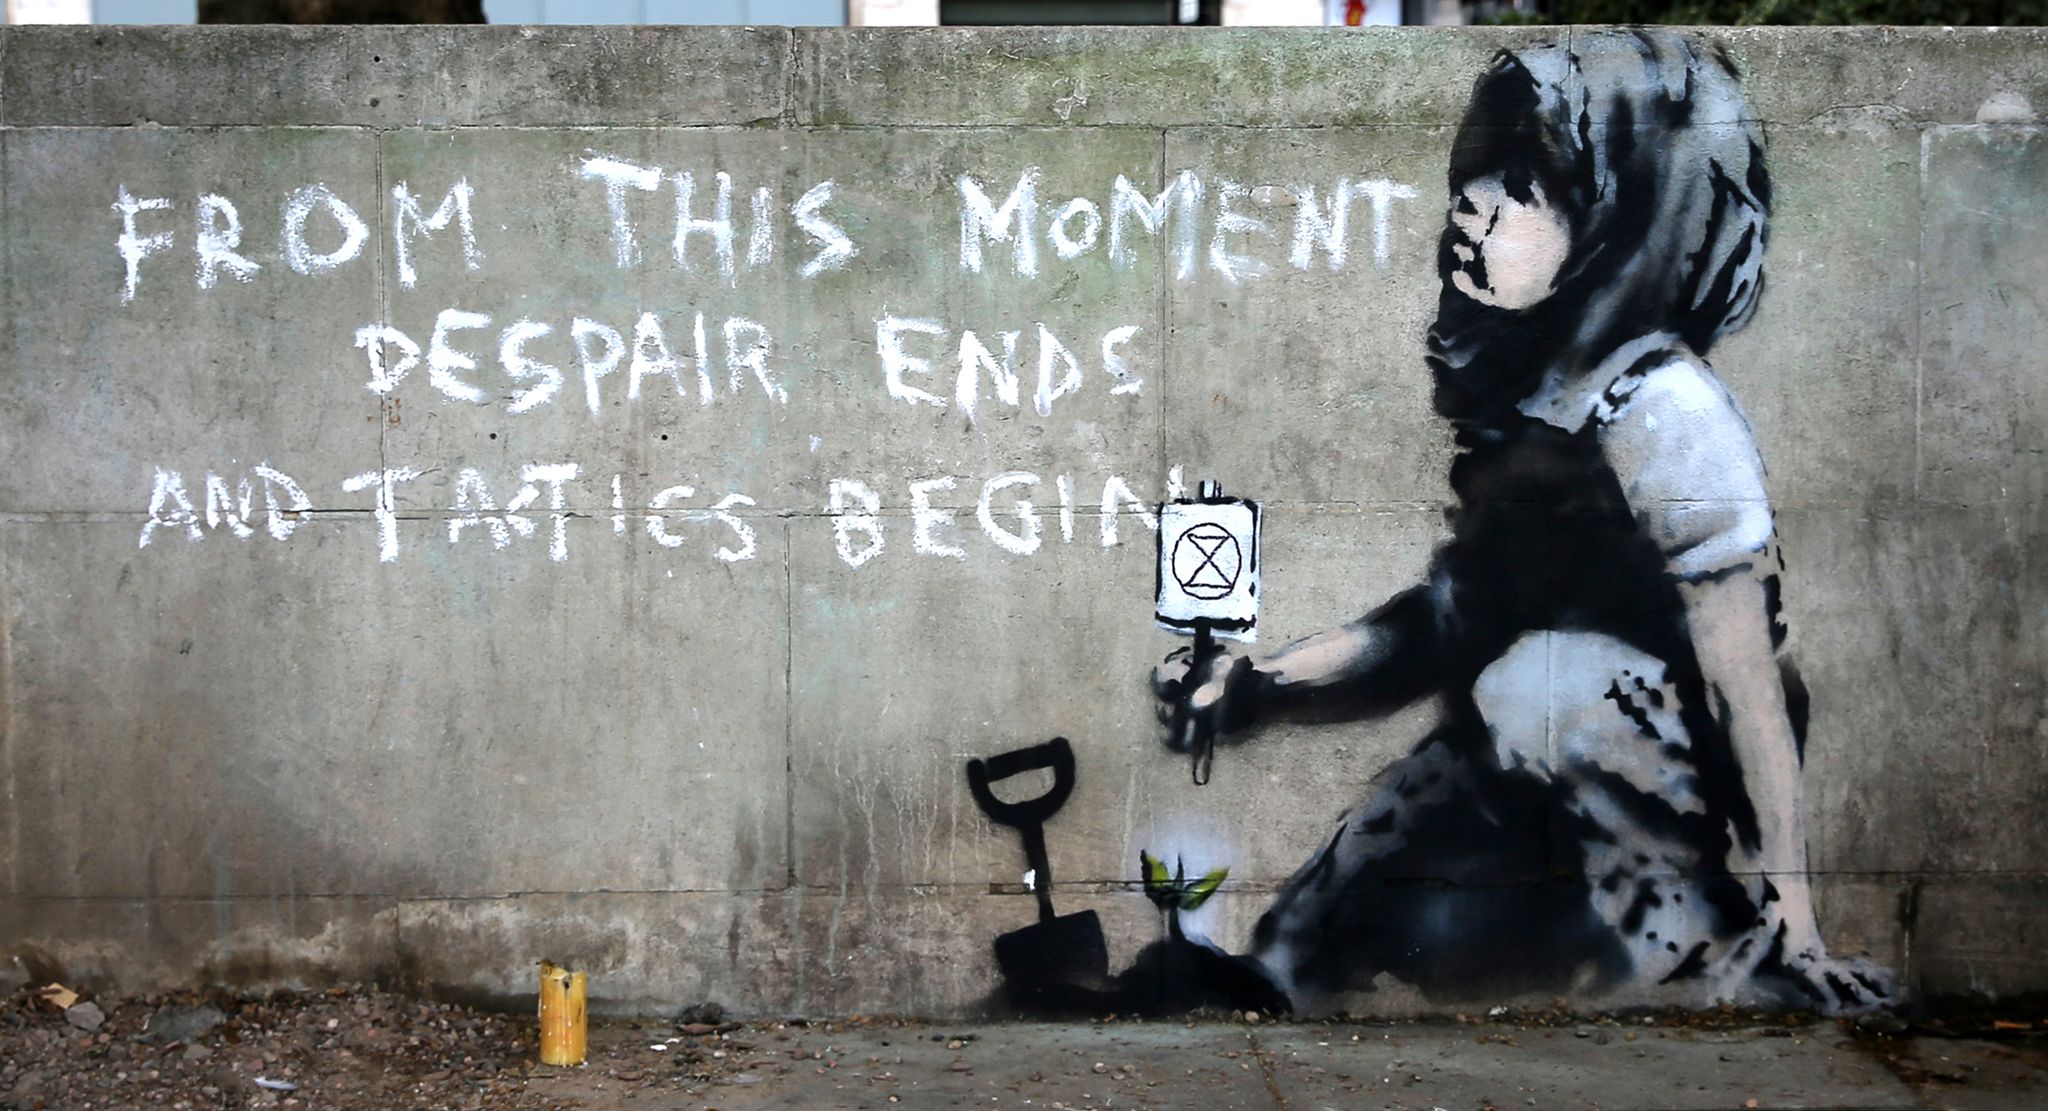 Banksy, le street artist britannique et ses oeuvres subversives anonymes  – L'Express